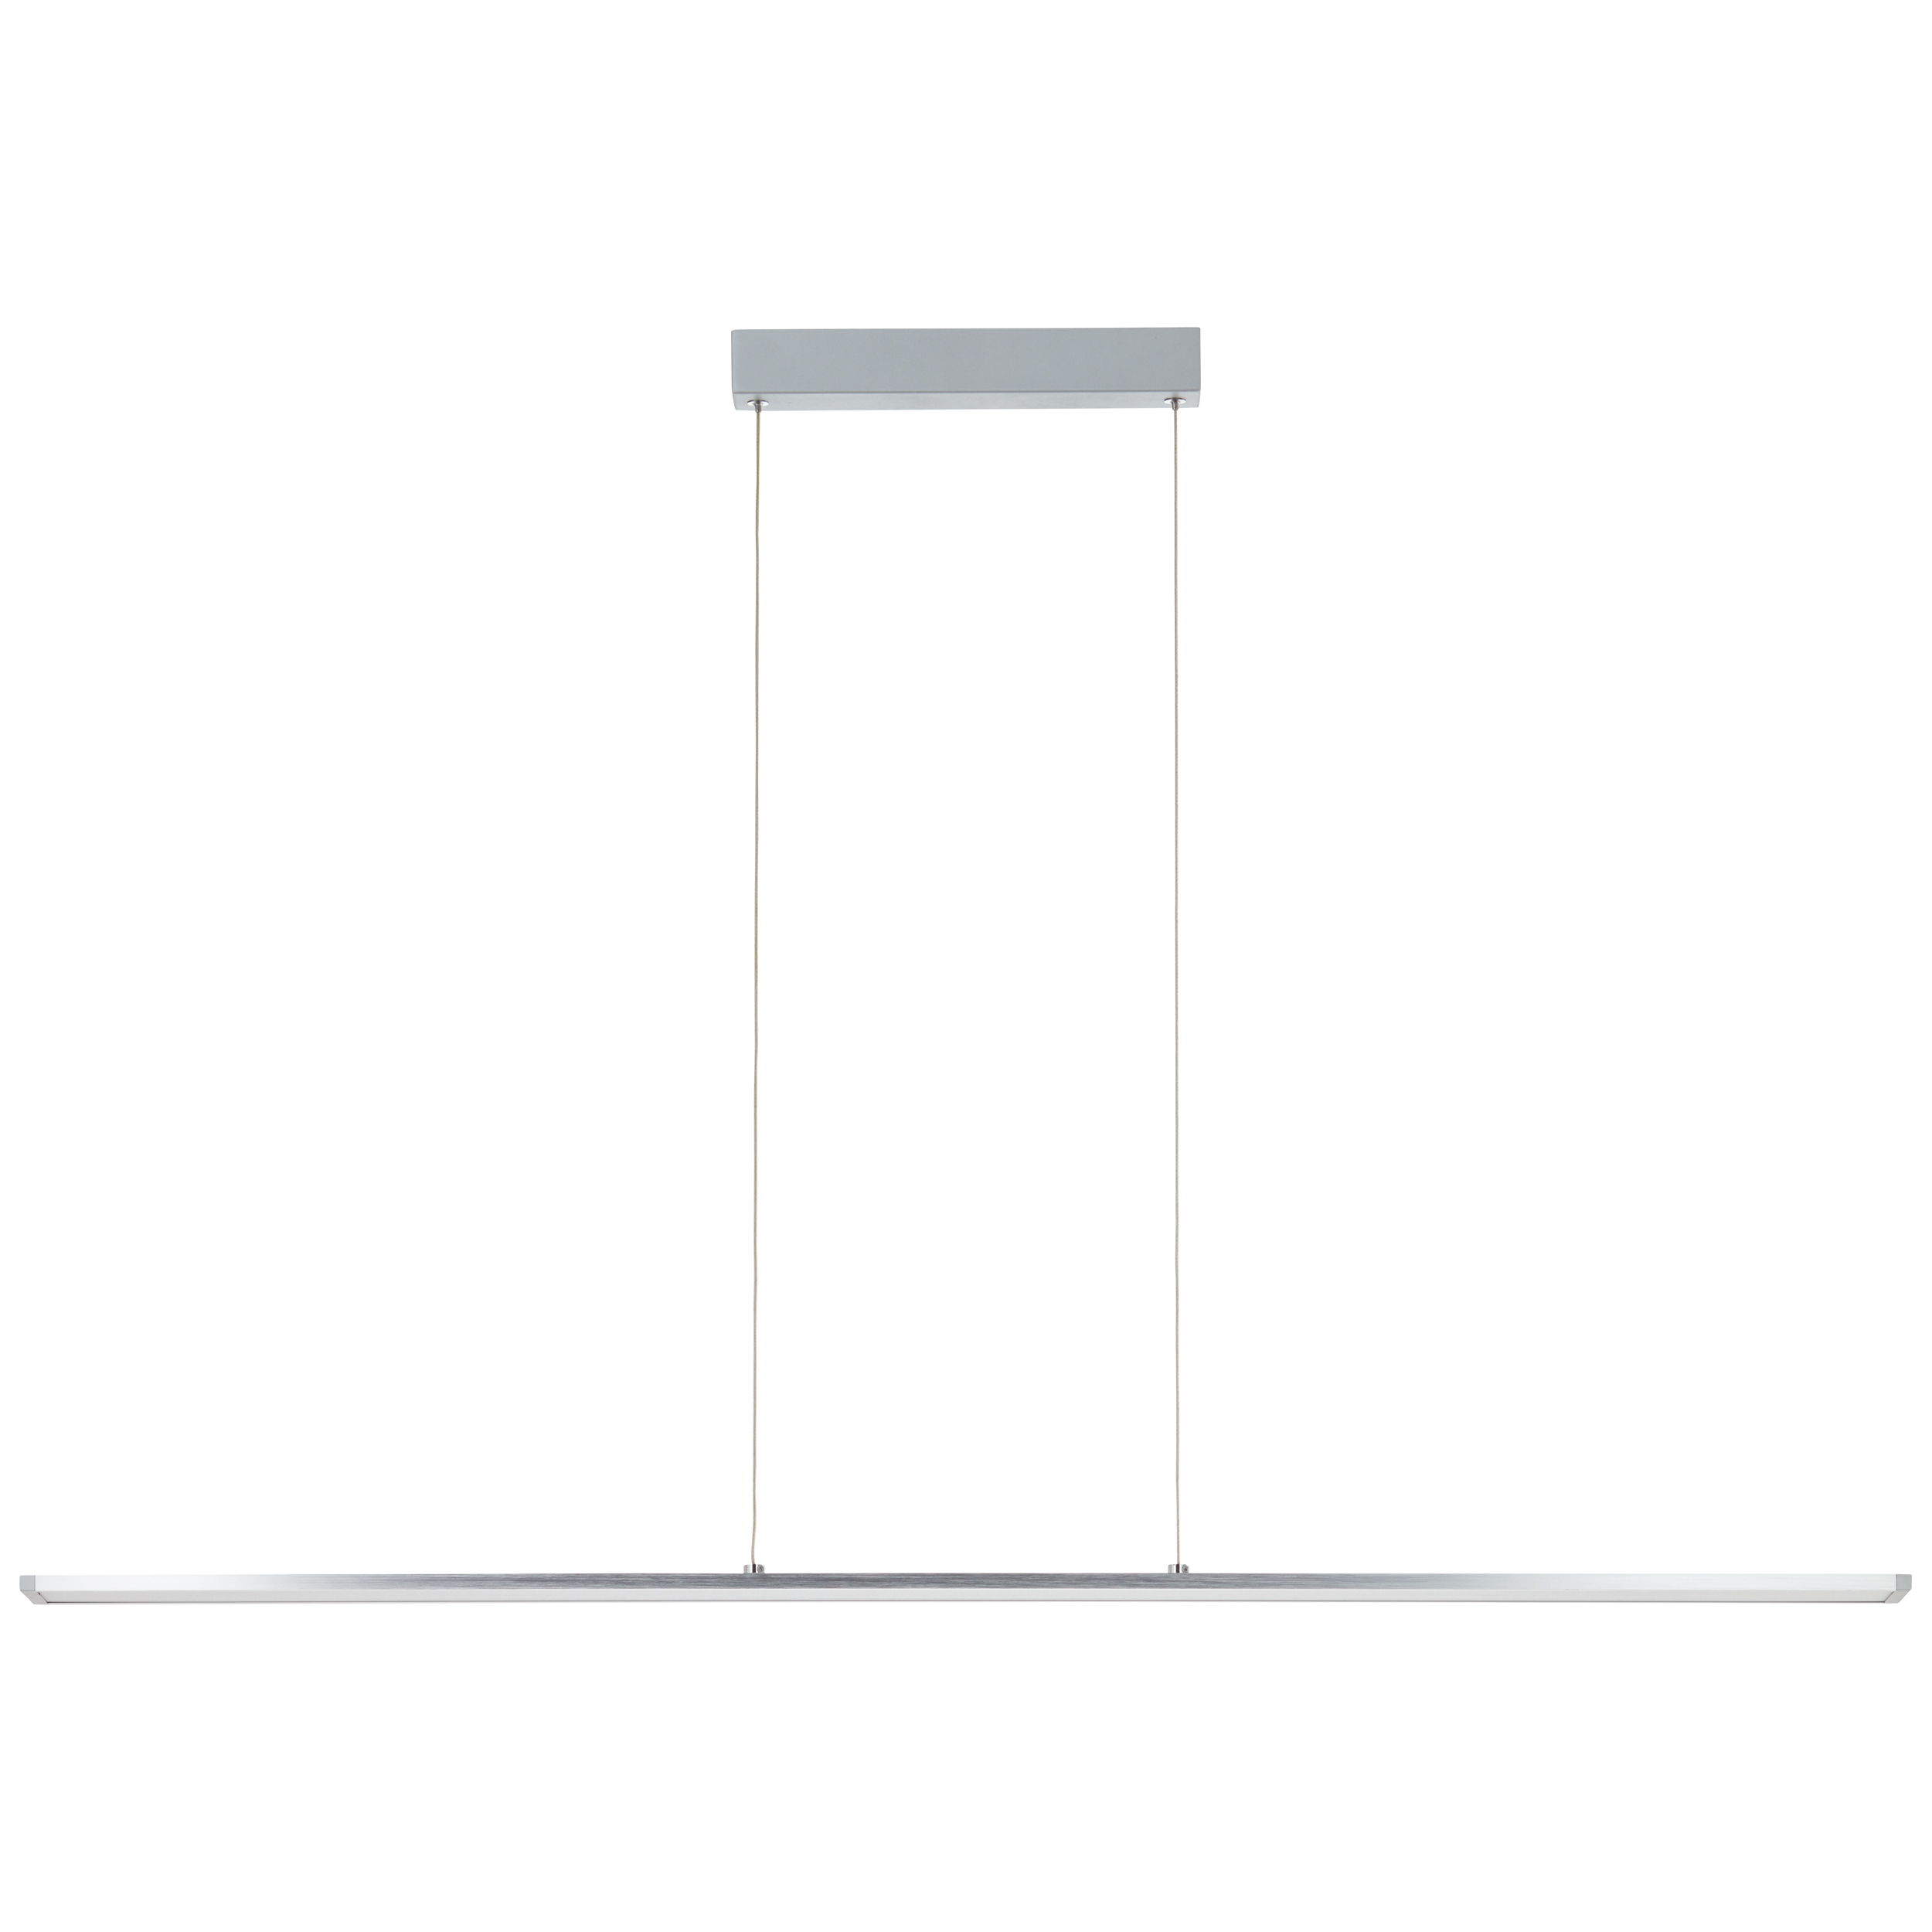 Entrance LED Pendelleuchte Paneel 120cm alu/weiß | G97028/21 easyDim